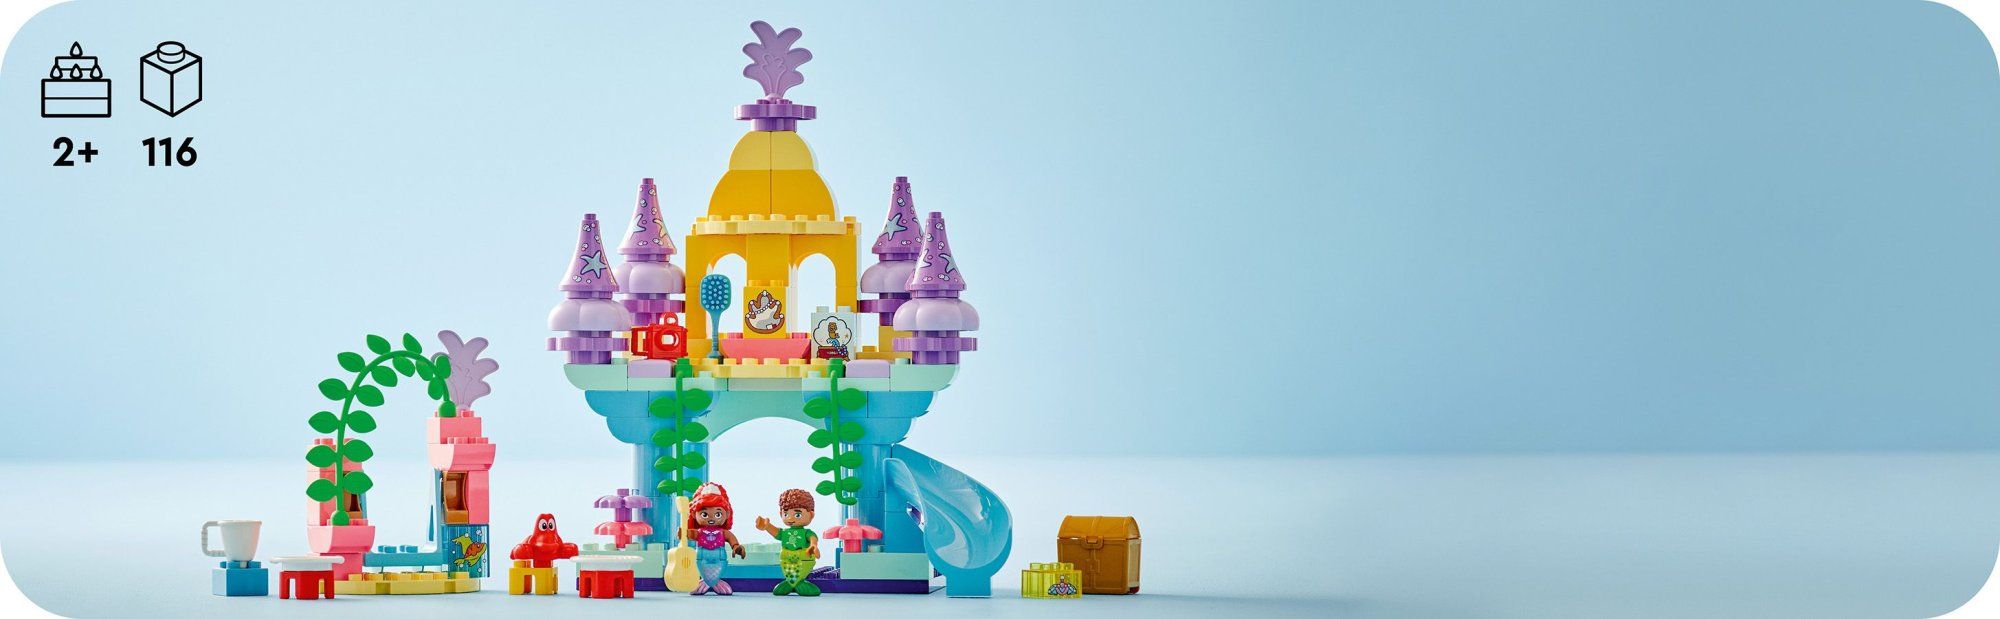 LEGO DUPLO Disney 10435 Arielin kouzelný podmořský palác